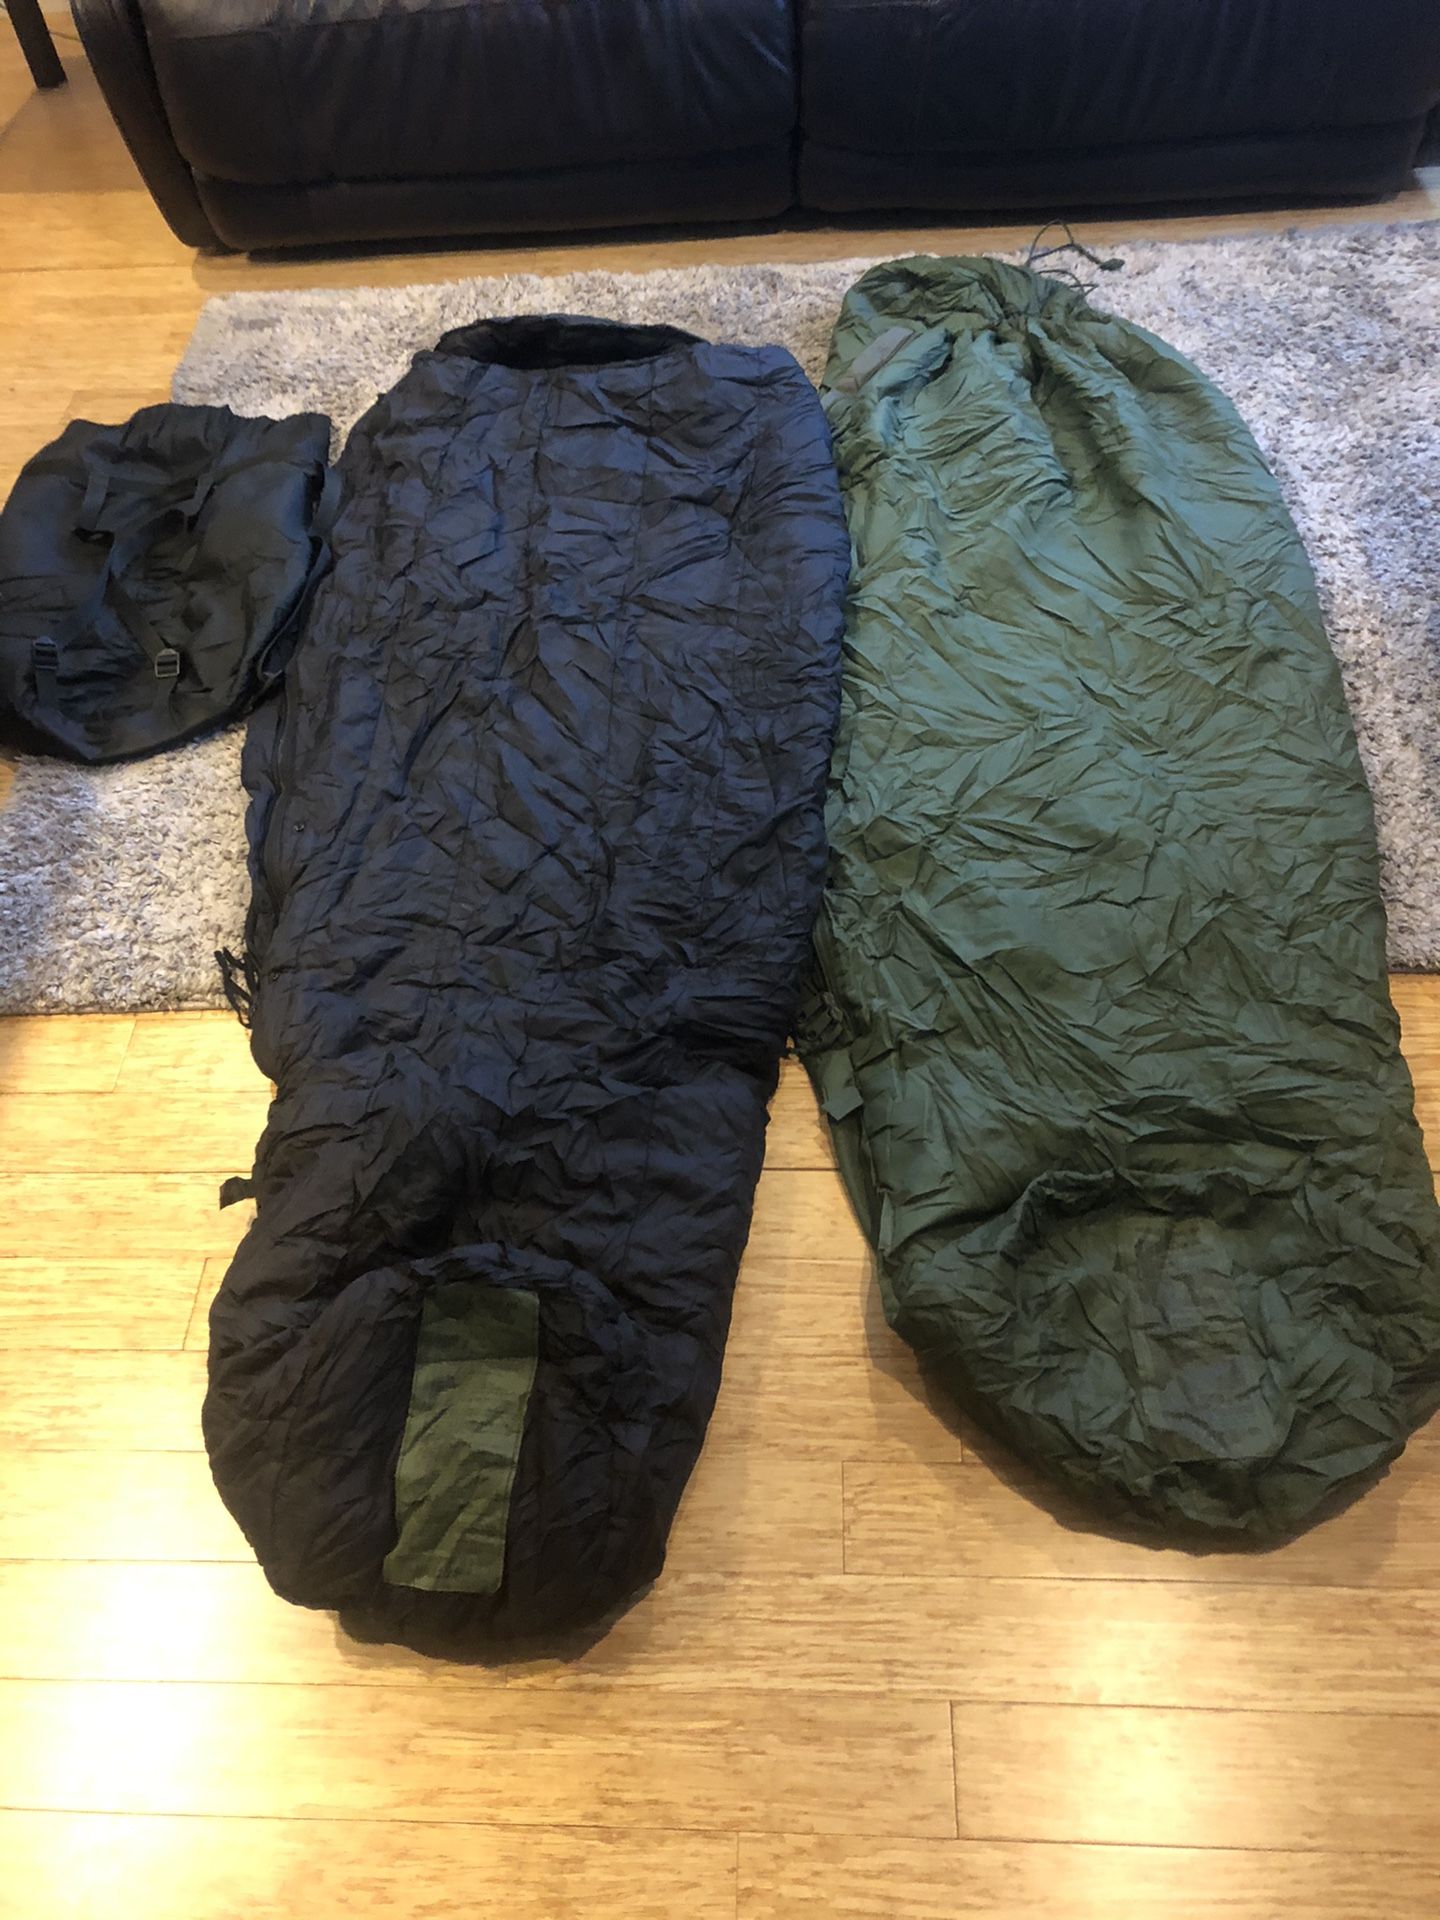 US Army sleeping bag system